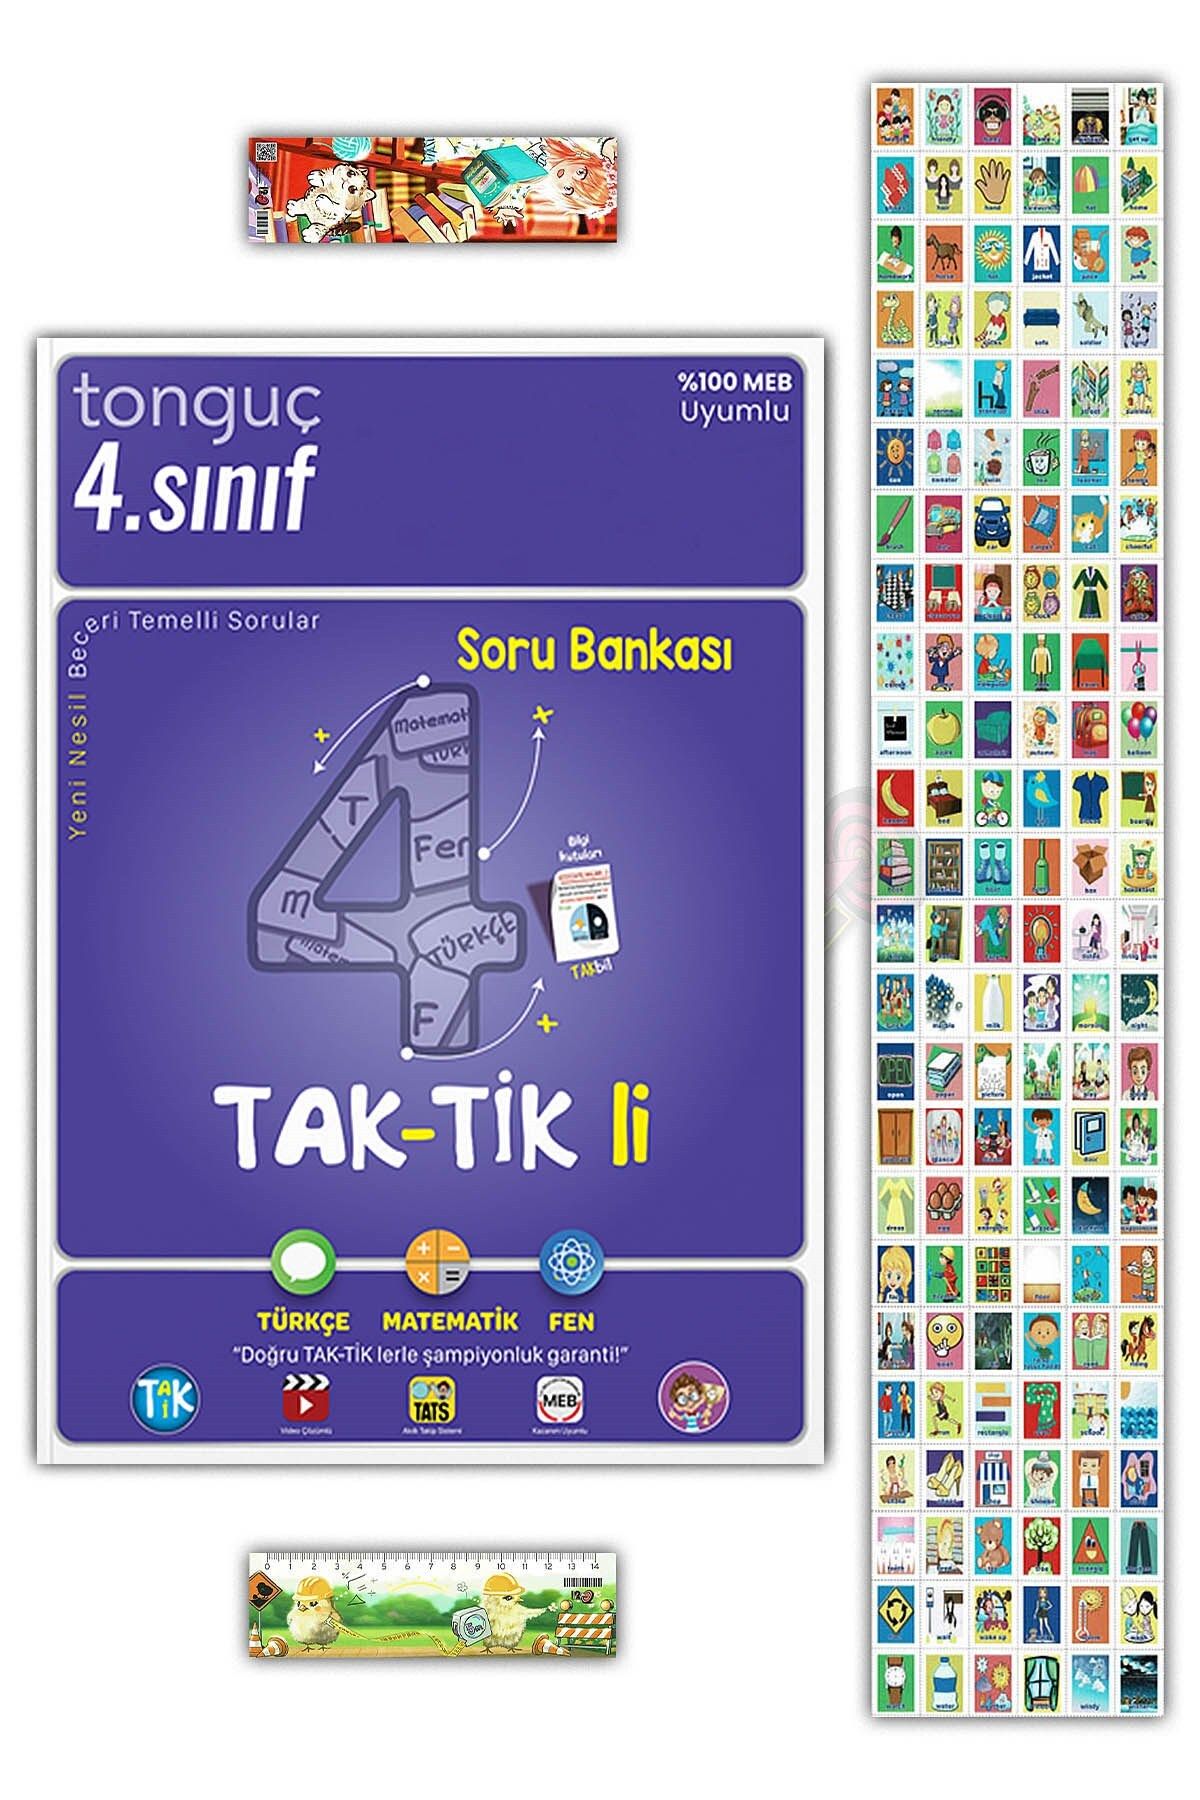 Tonguç Yayınları 4. Sınıf Taktikli Soru Bankası (Türkçe Matematik Fen) - İngilizce Kelime Kartları